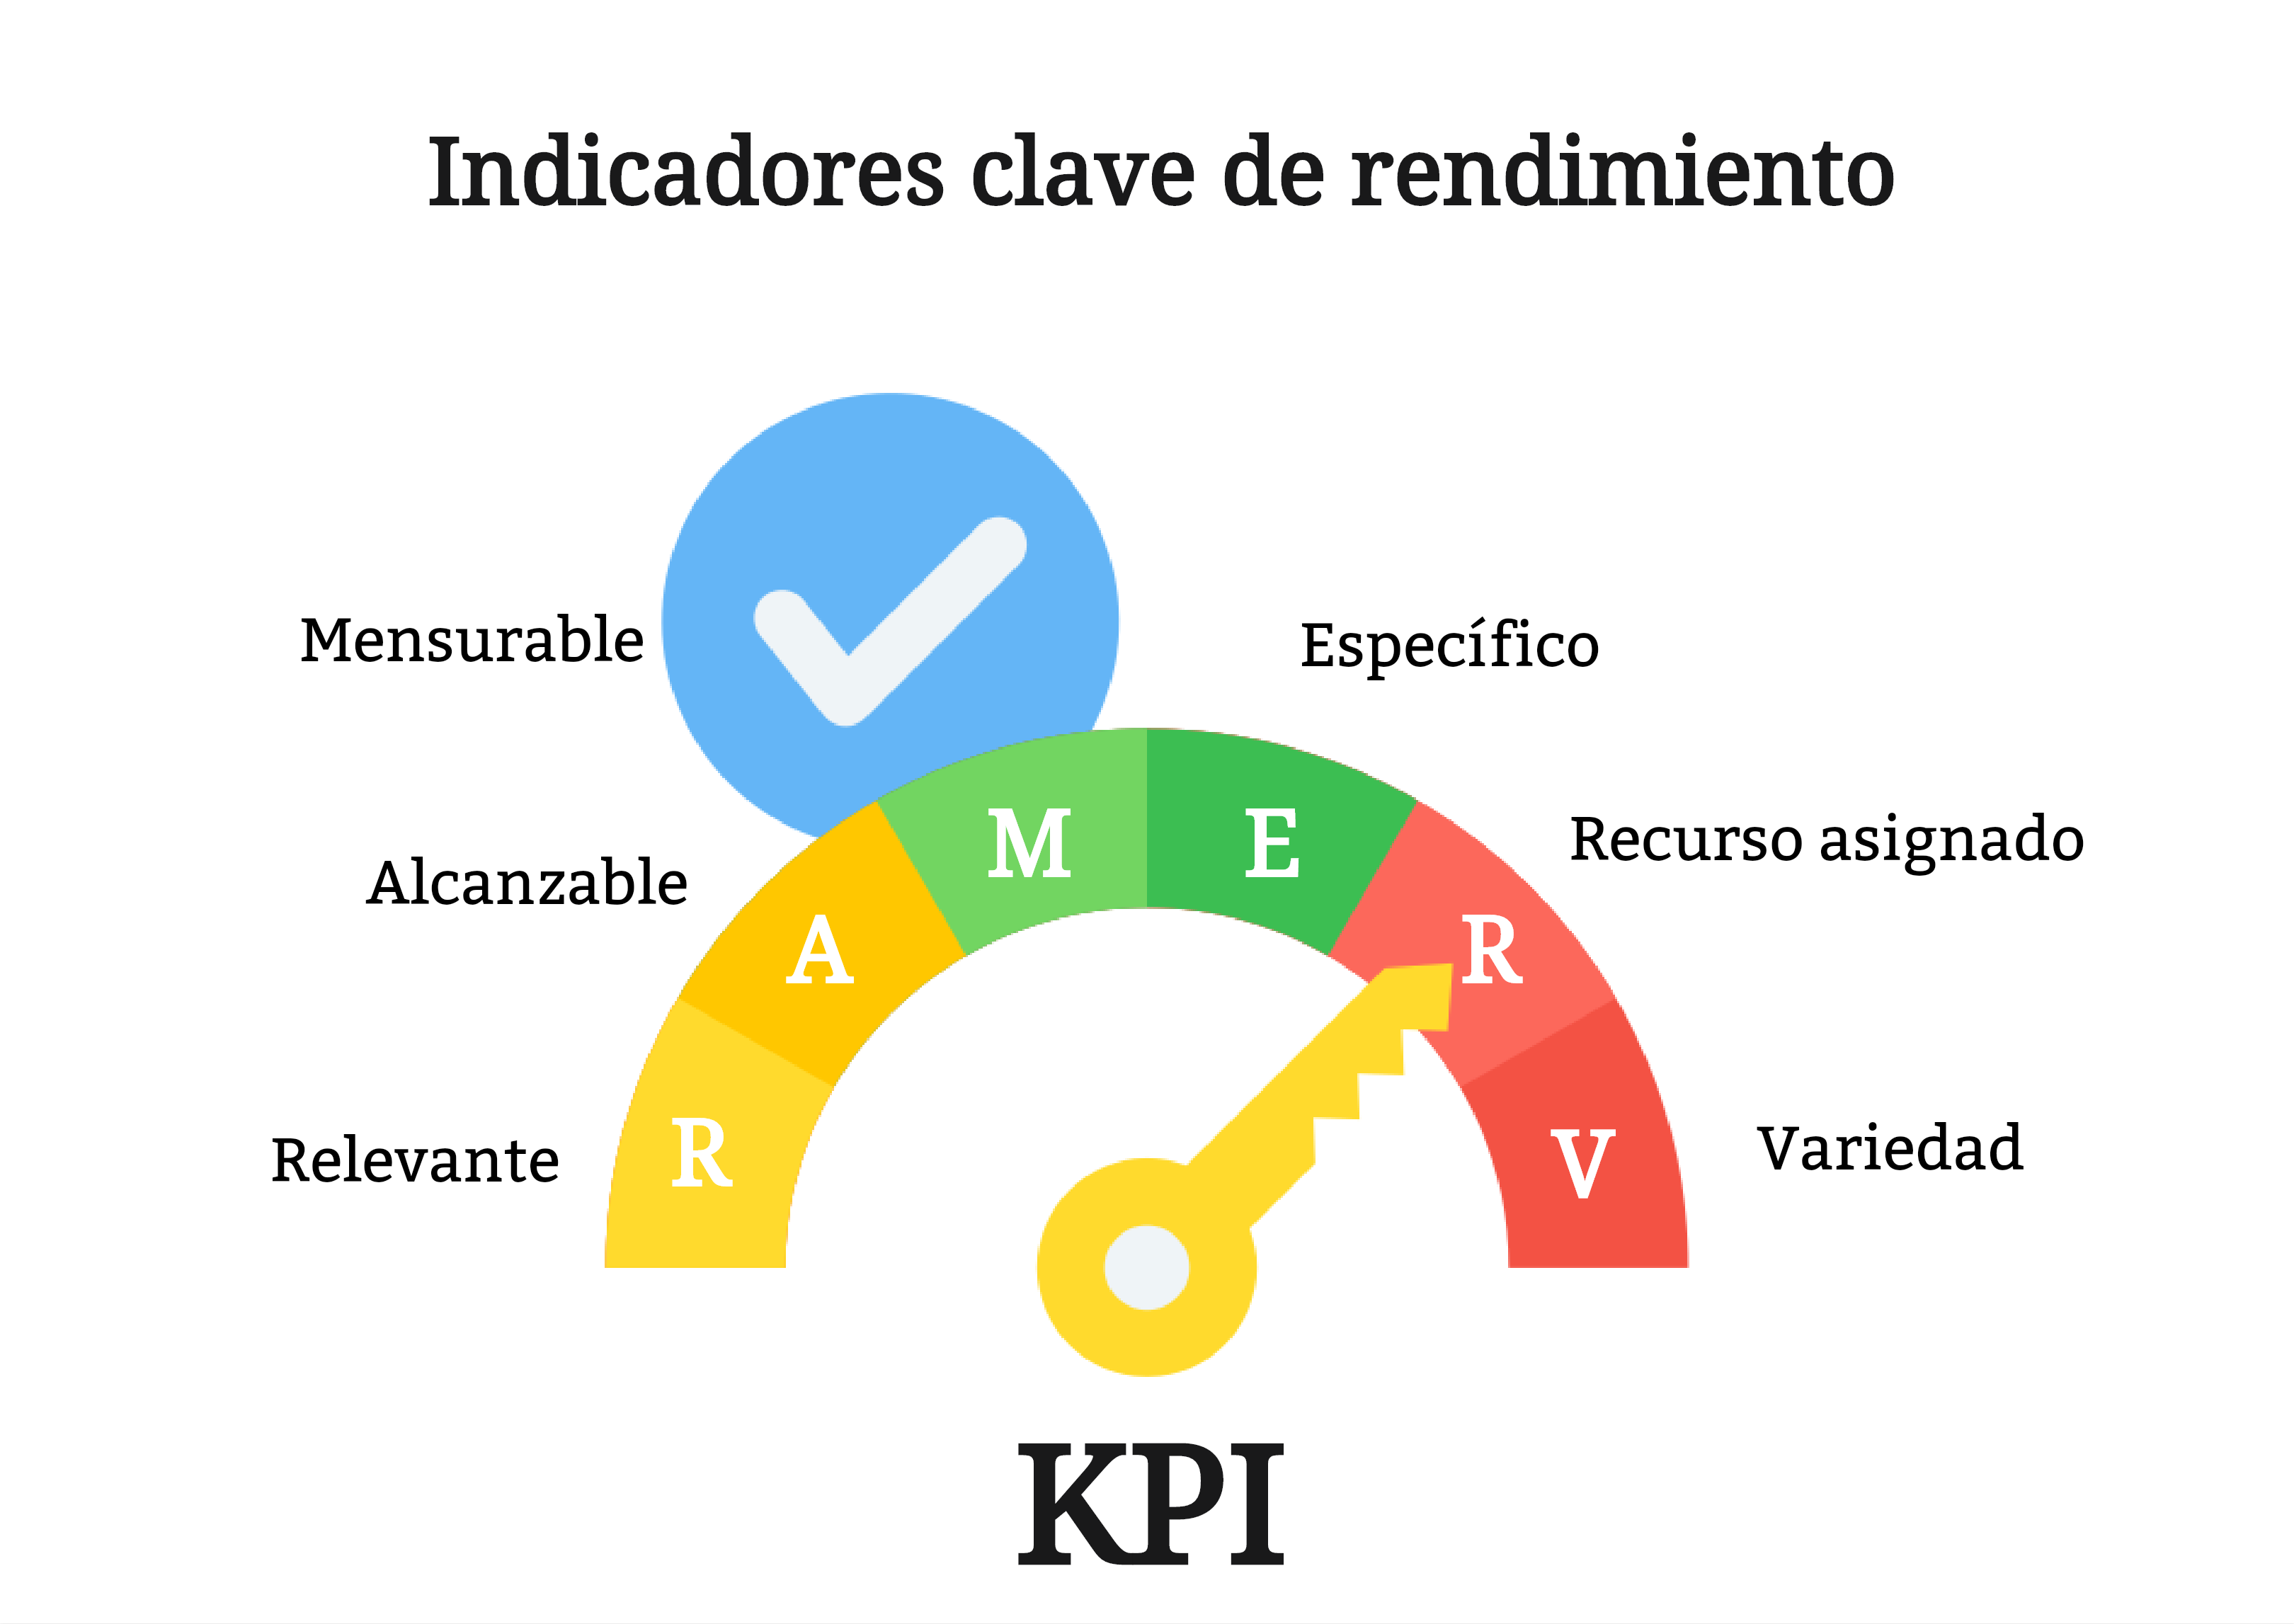 KPI: Definición y uso